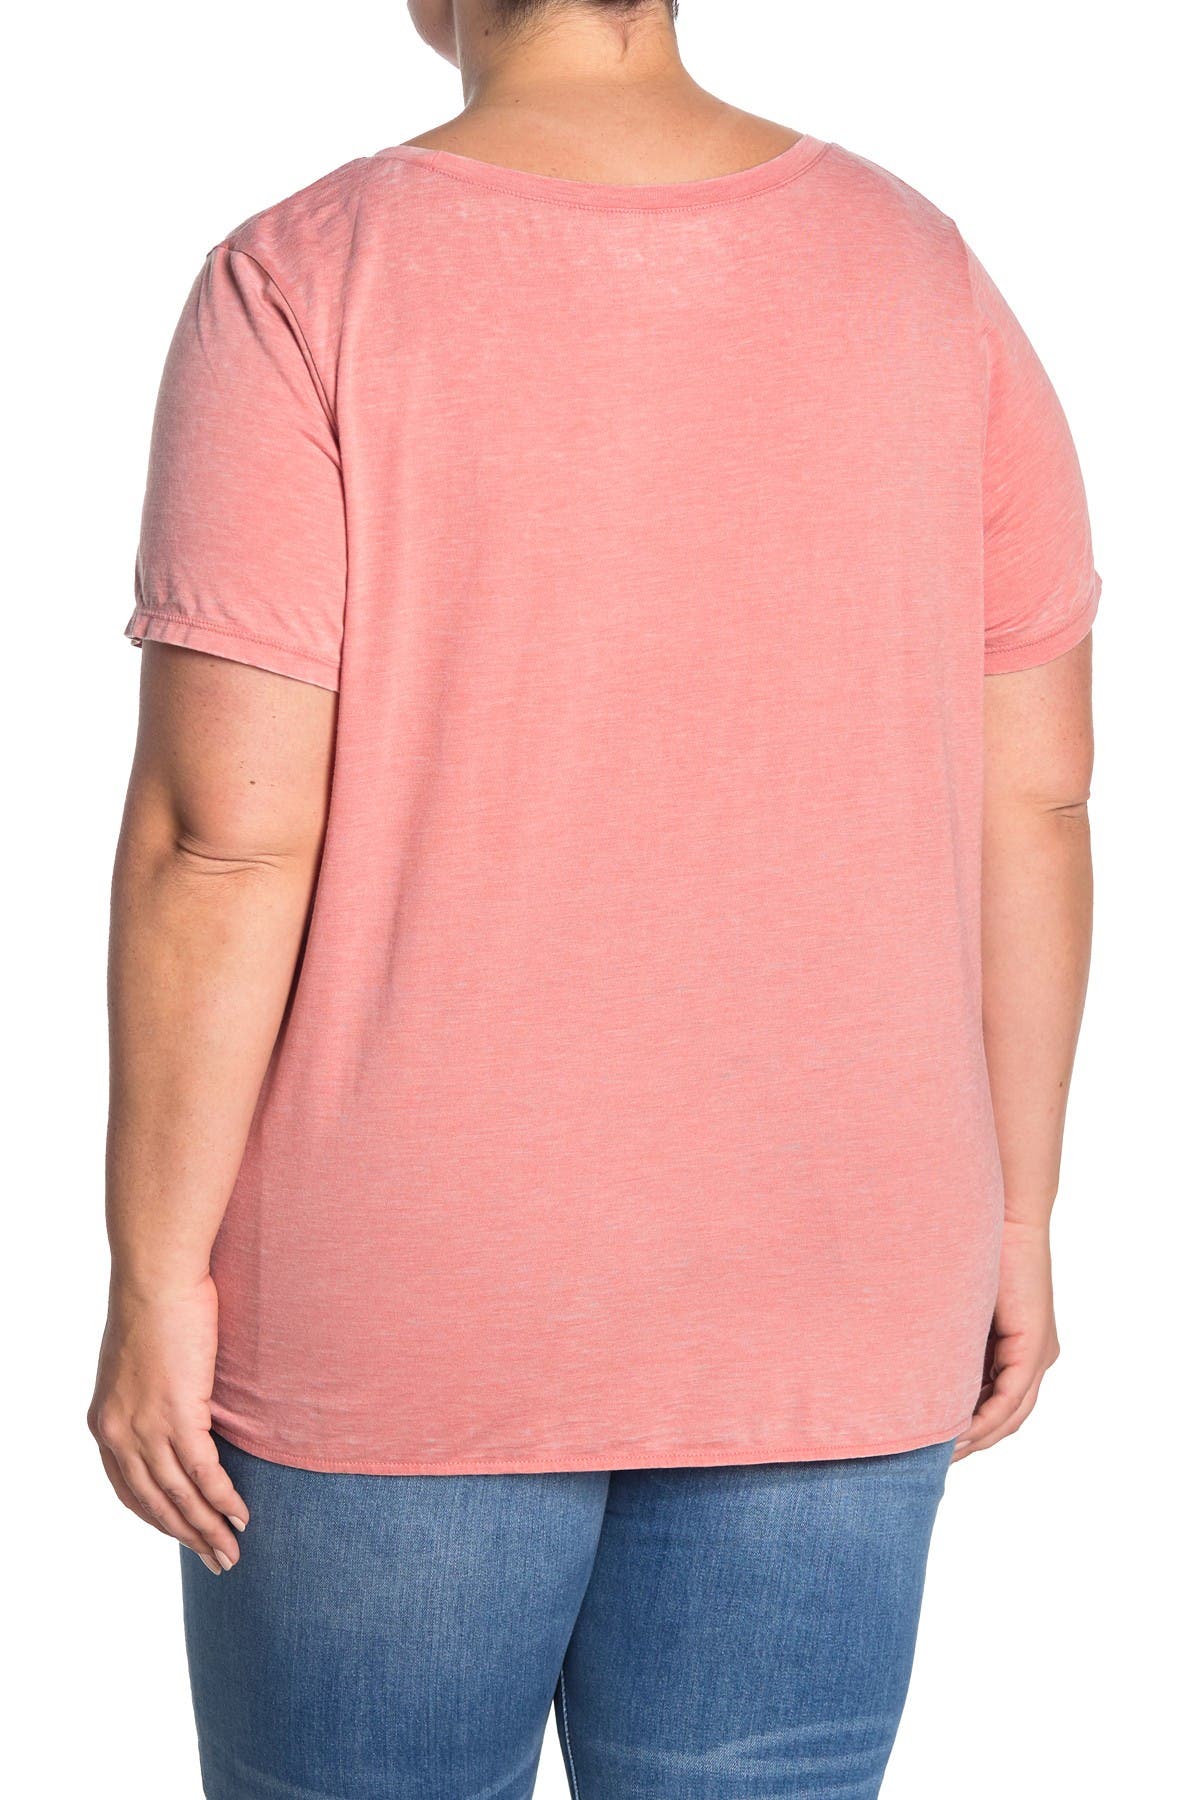 Caslon Burnout Tie Front T-shirt In Light/pastel Pink